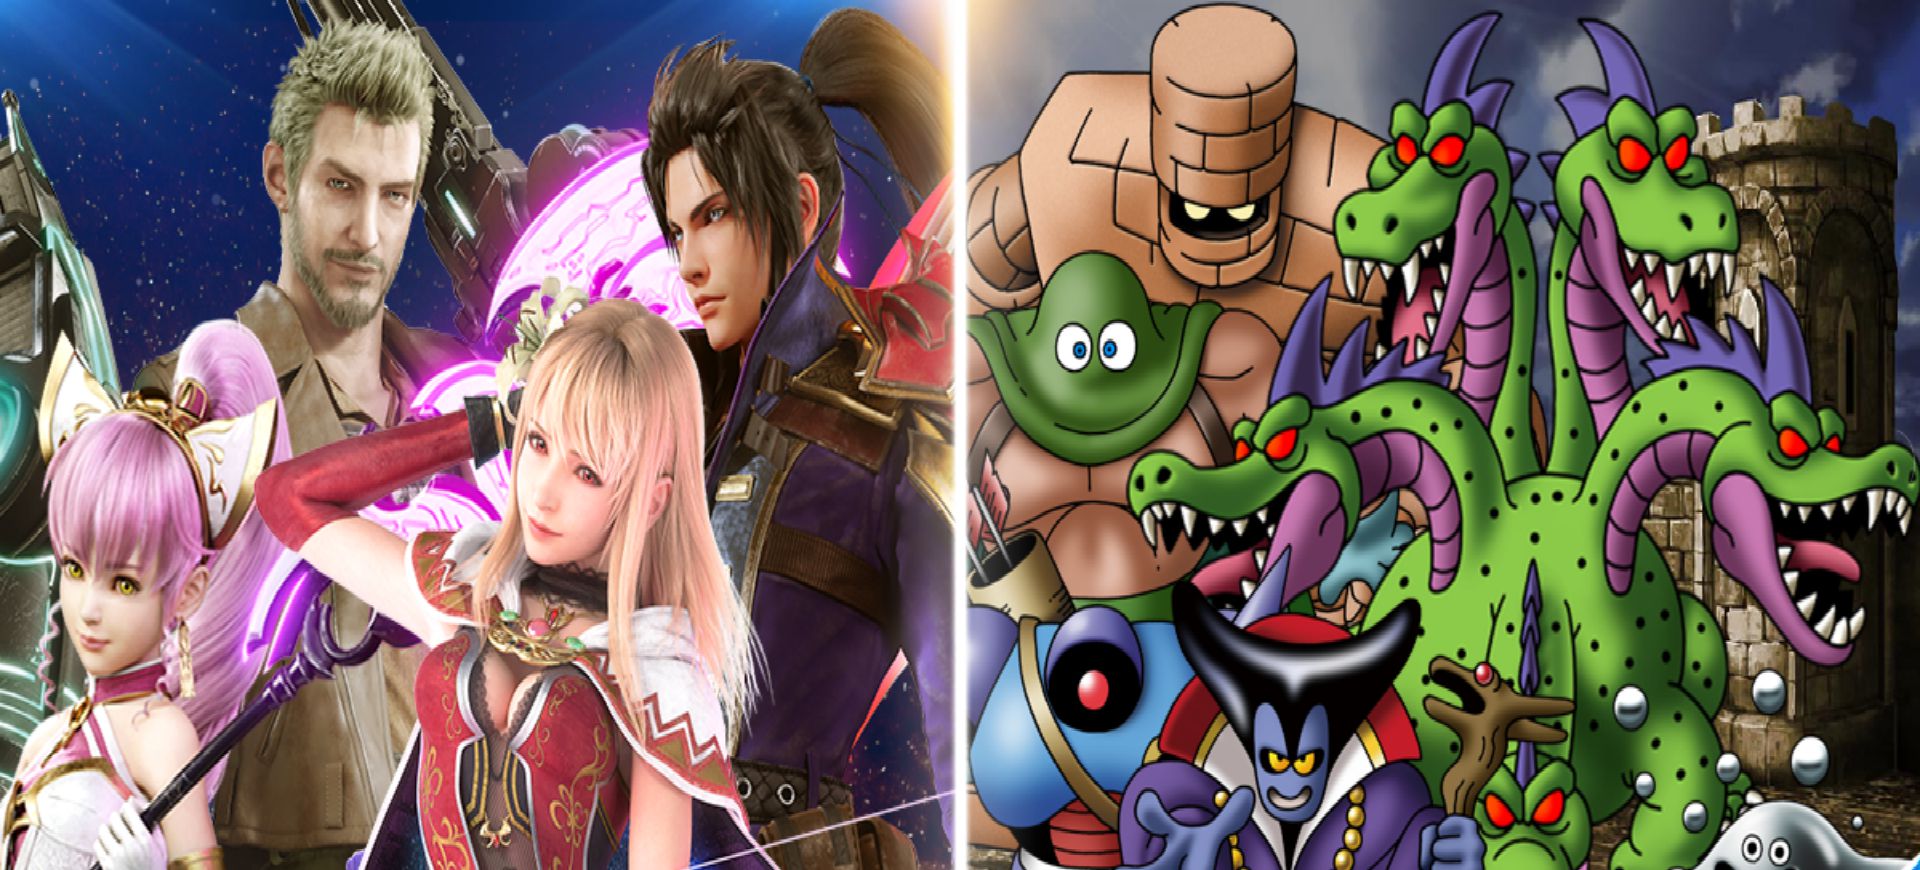 Chào đón Dragon Quest XI, Final Fantasy Brave Exvius ra mắt loạt sự kiện mới - Tin Game